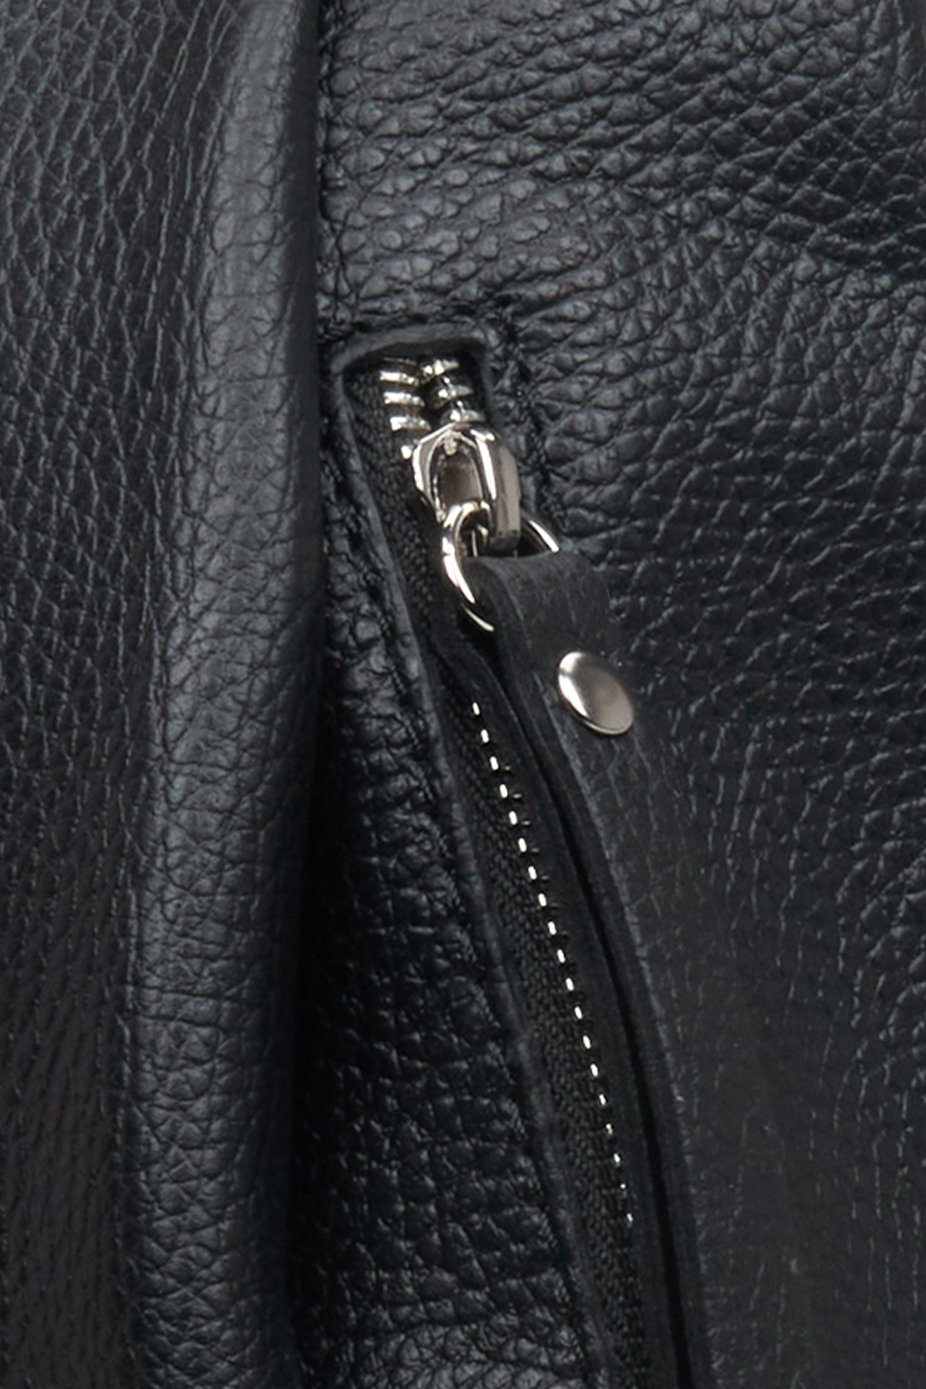 Elegant women's black backpack - close-up on details.